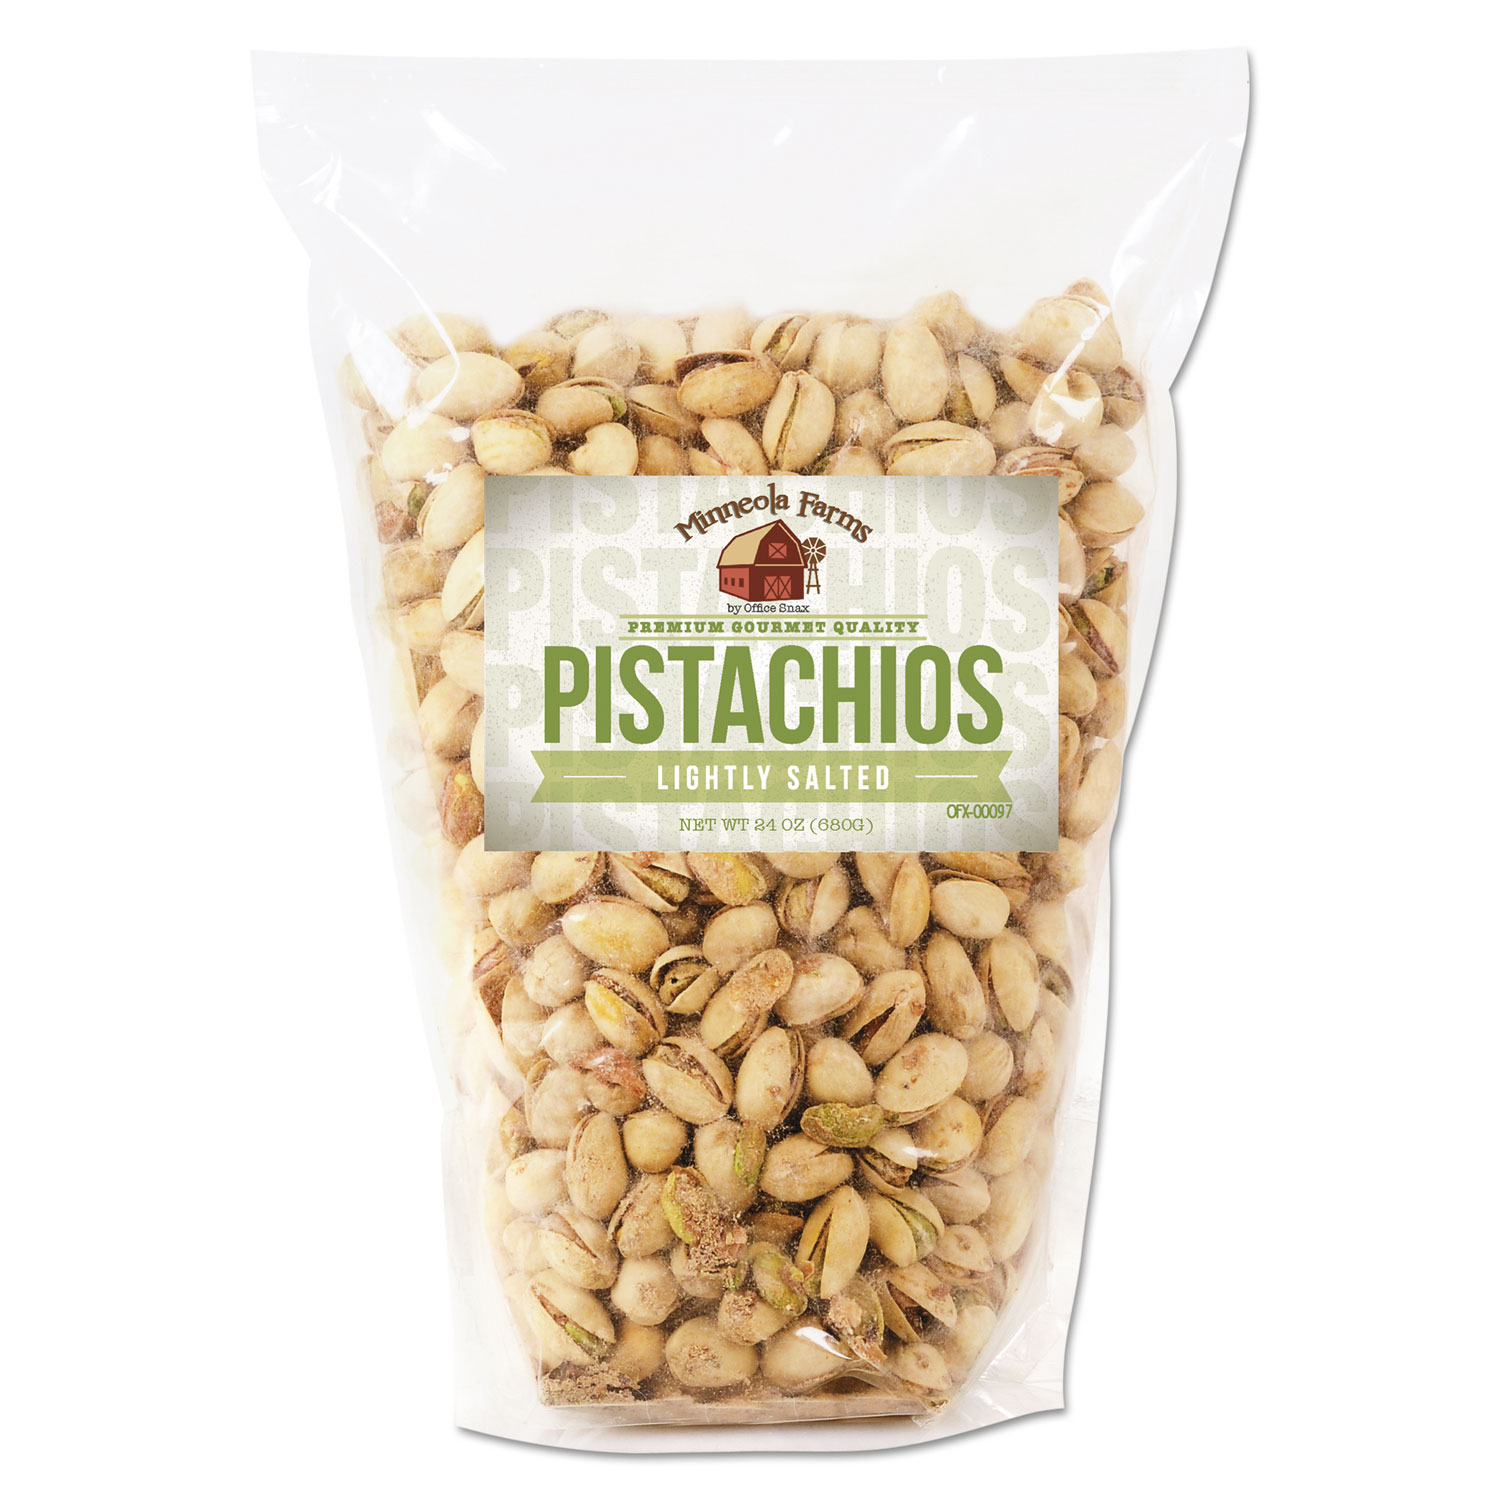 Favorite Nuts, Pistachios, 24 oz Bag